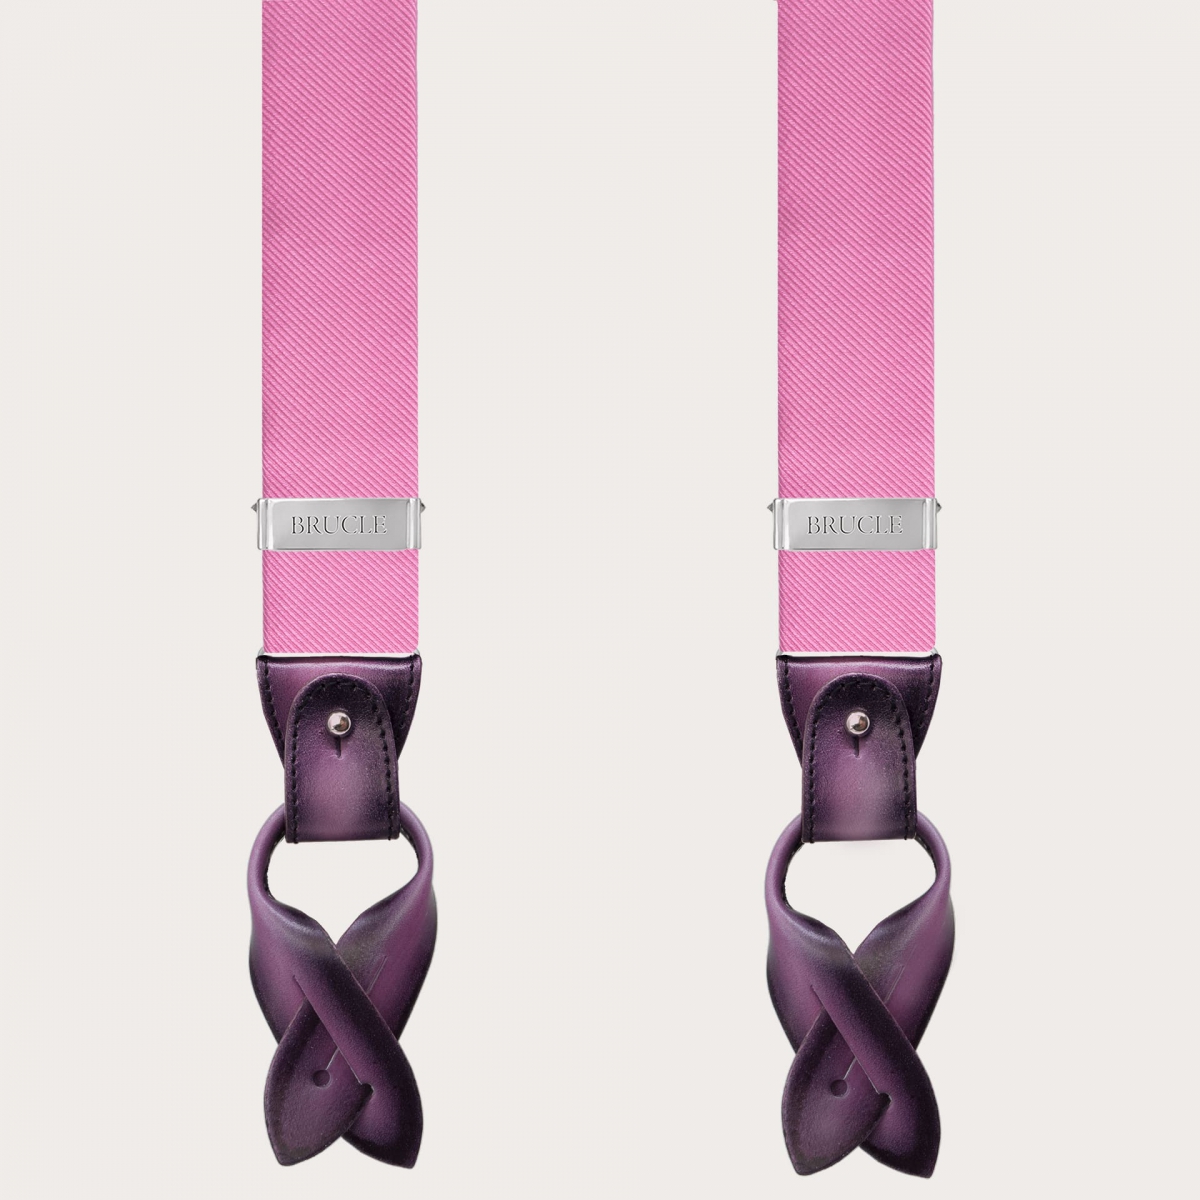 BRUCLE Men's suspenders in pink jacquard silk